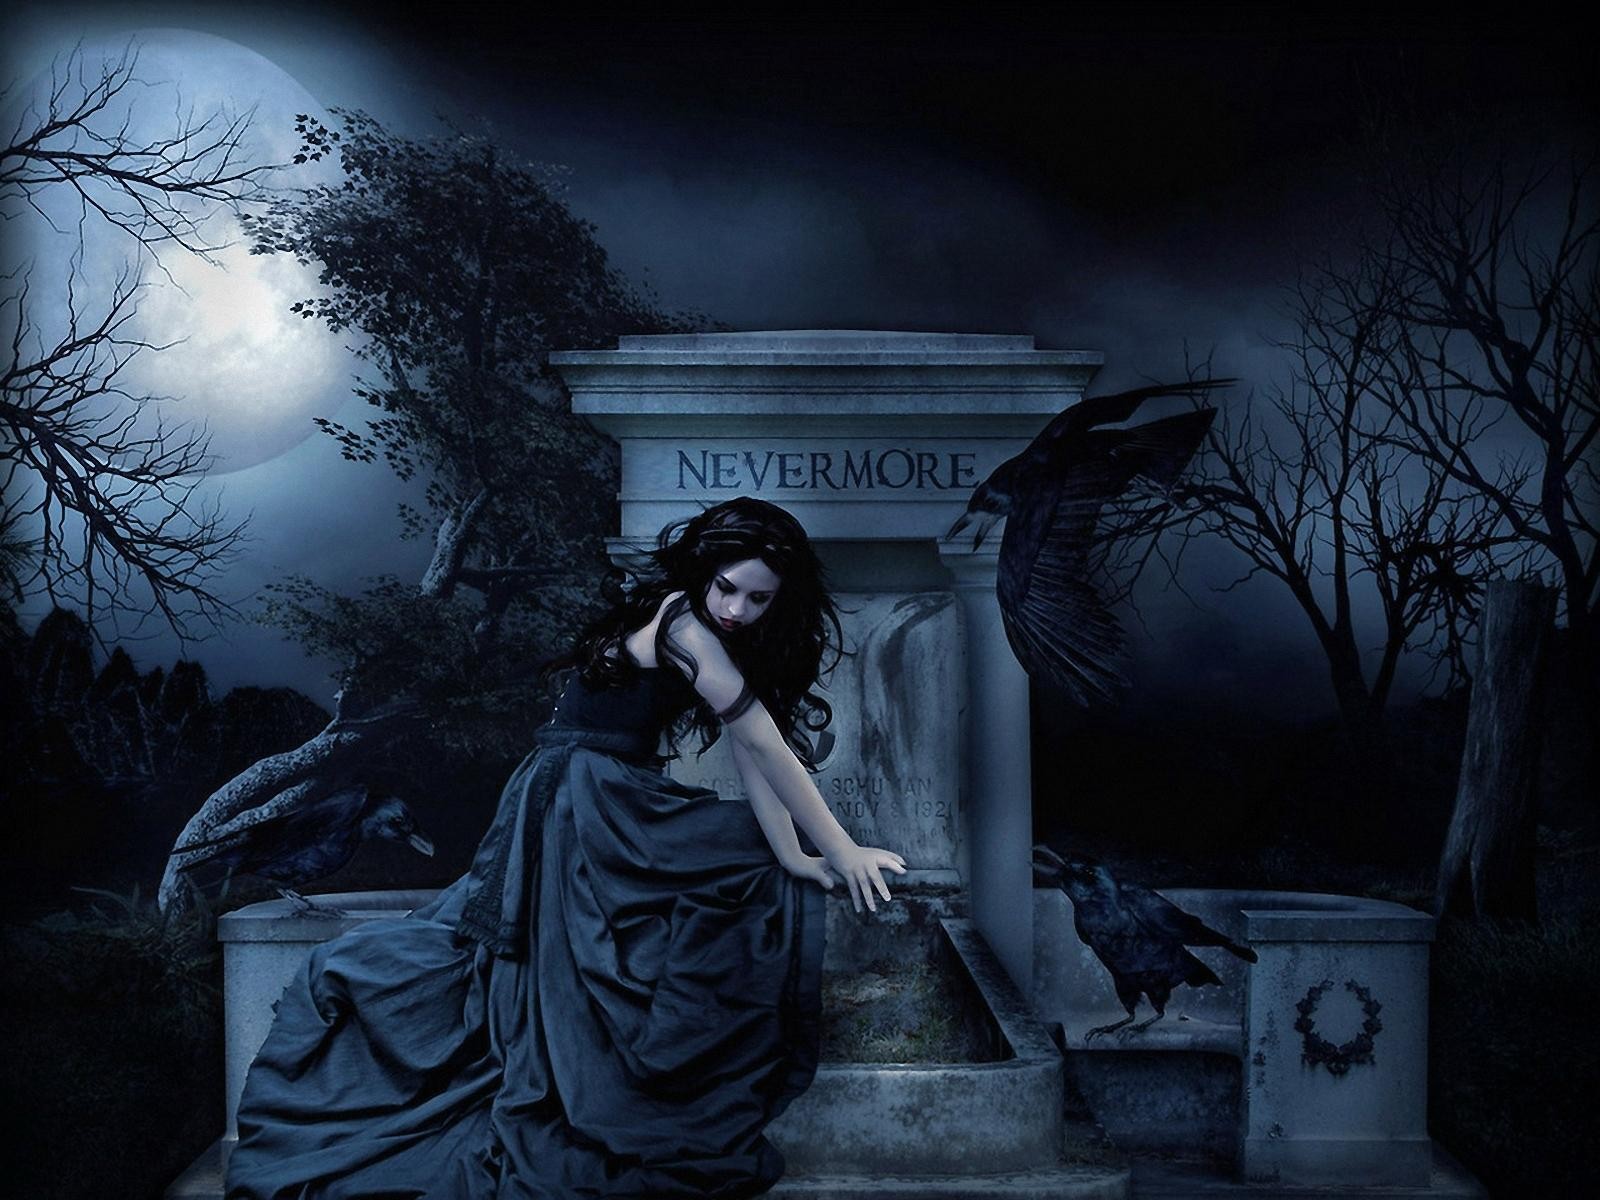 Vampira-en-Cementerio-terror-calavera-ojos-muerte-demonio-bestia-vampiro-esqueleto-fantasma-mal-zombie-1600x1200.jpg